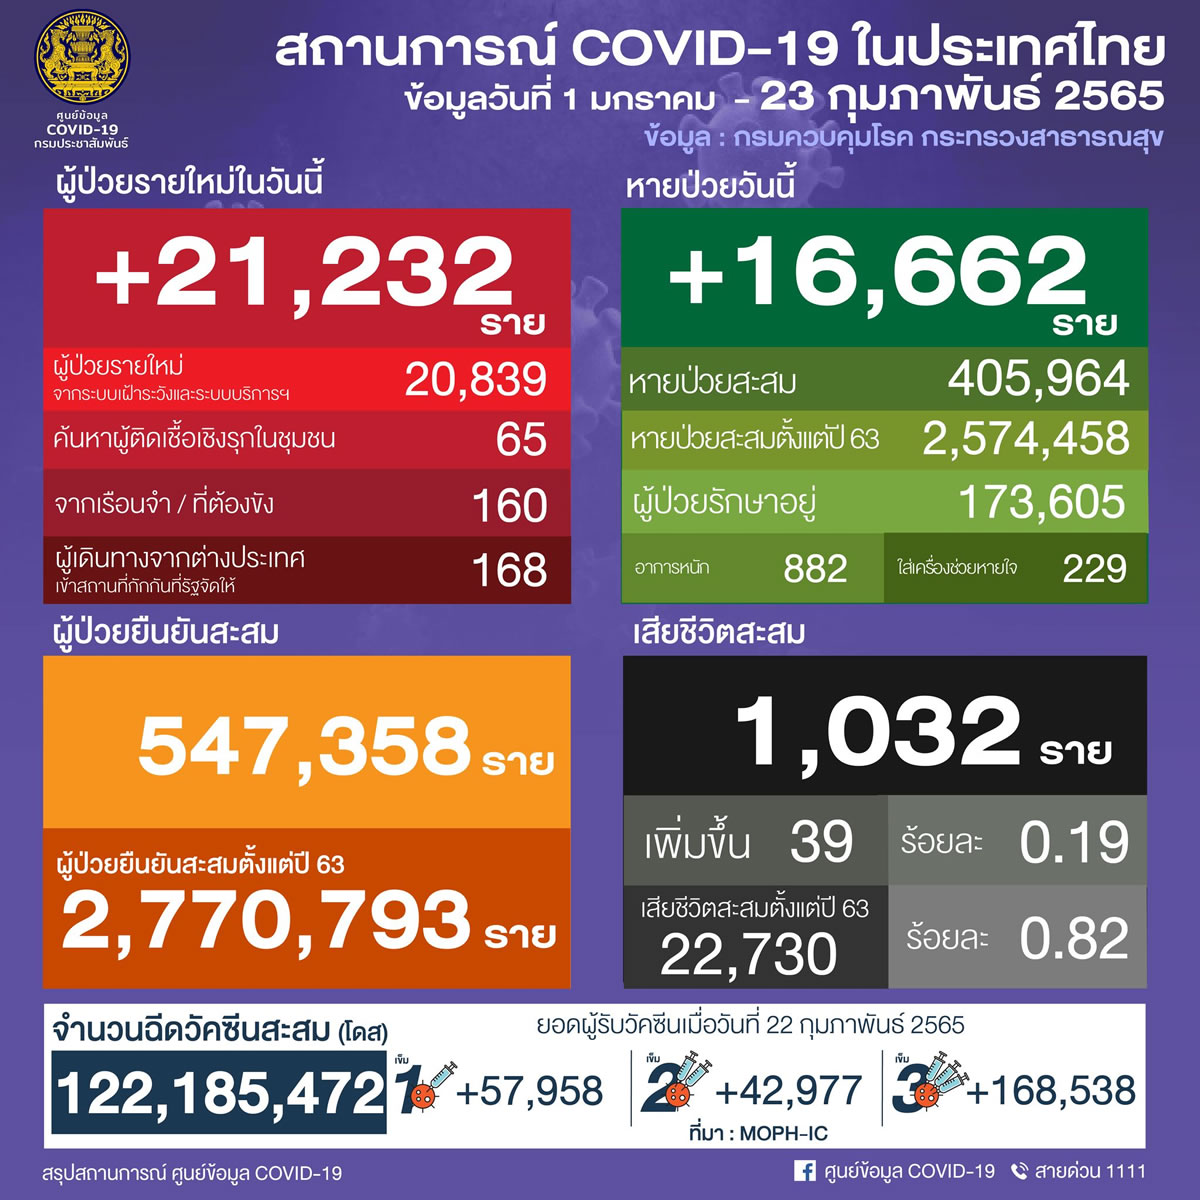 タイ 21,232人陽性 39人死亡／バンコク 3,079人陽性／チョンブリ 1,369人陽性／サムットプラカン 990人陽性［2022年2月23日発表］